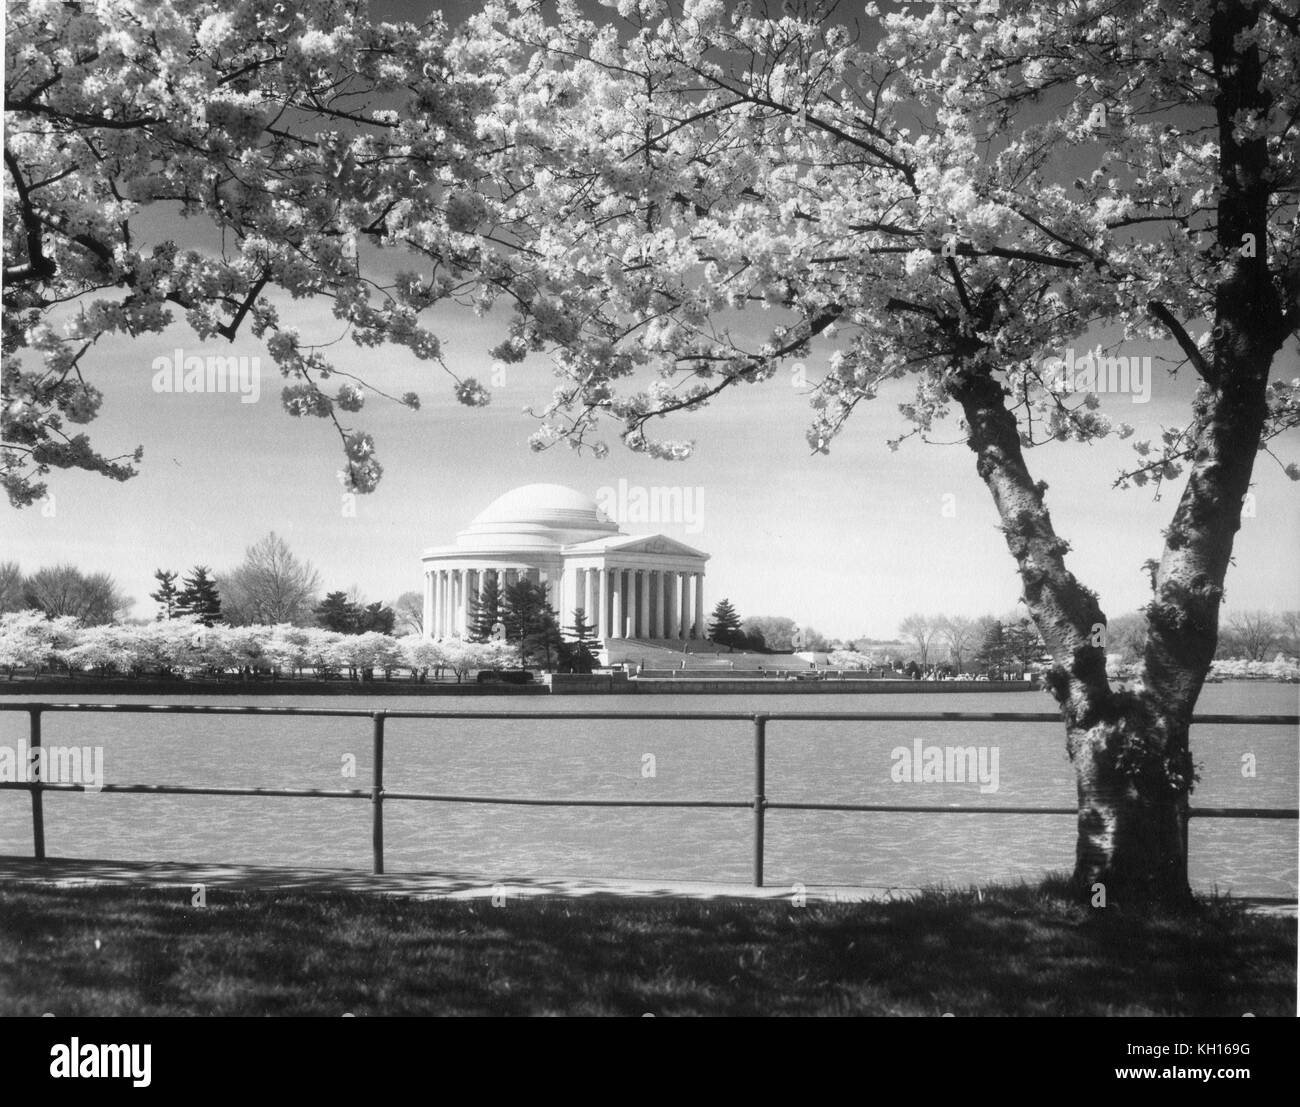 Foto de la icónica cerezos en flor cerca del Jefferson Memorial a lo largo del Tidal Basin, Washington, DC, 4-10-61. Foto por Abbie Rowe Foto de stock